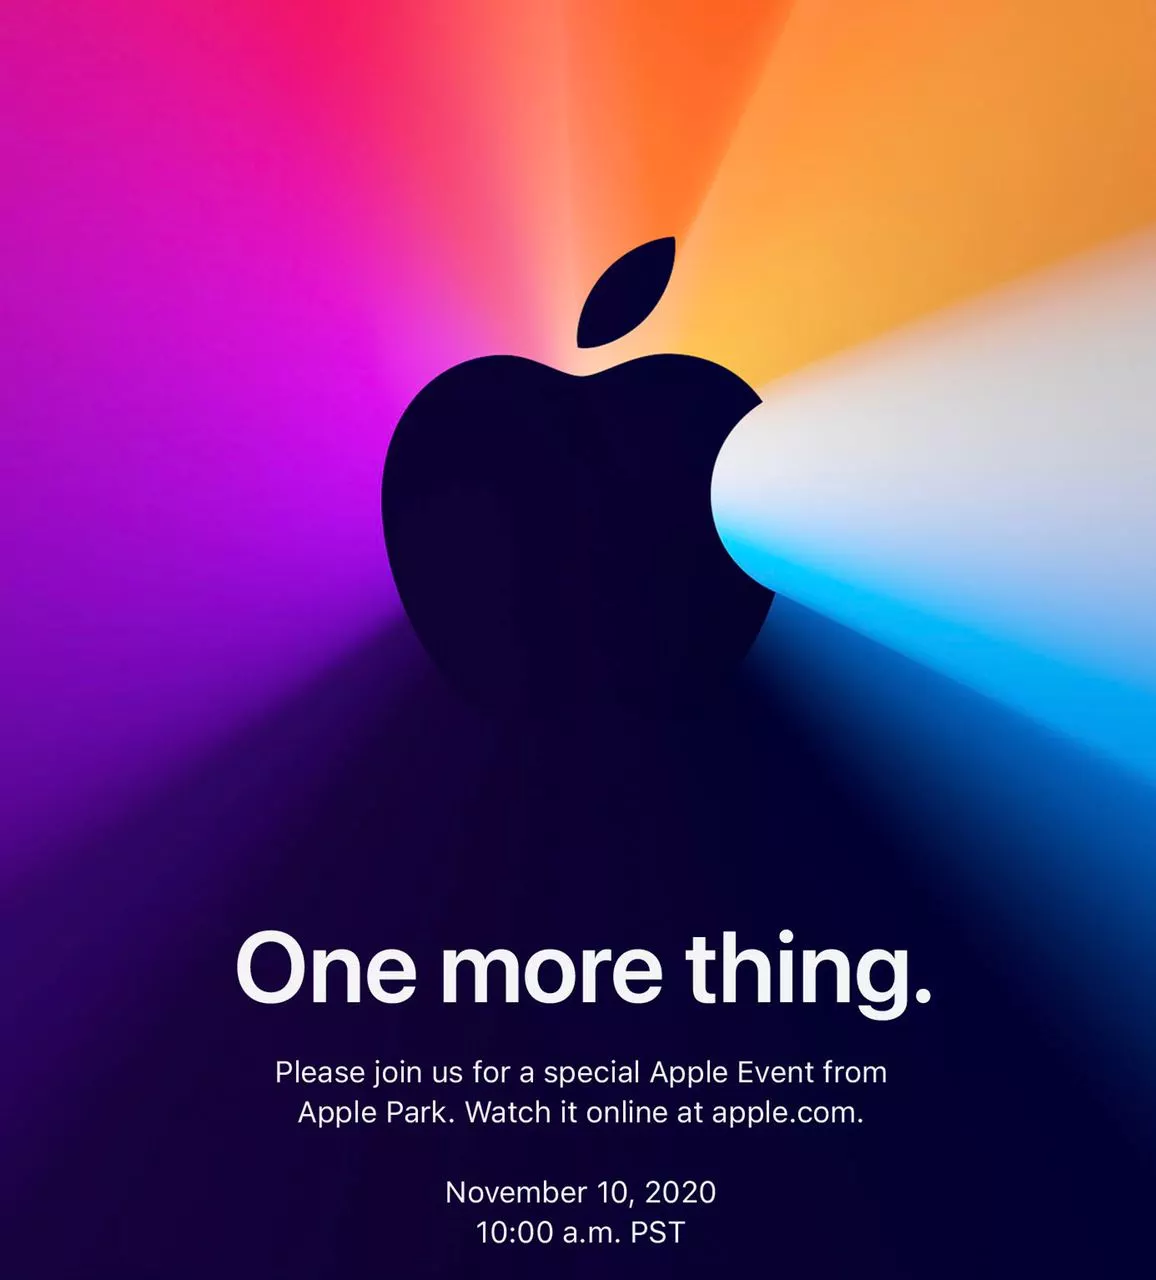 И кое-что еще: Apple Event 10 ноября